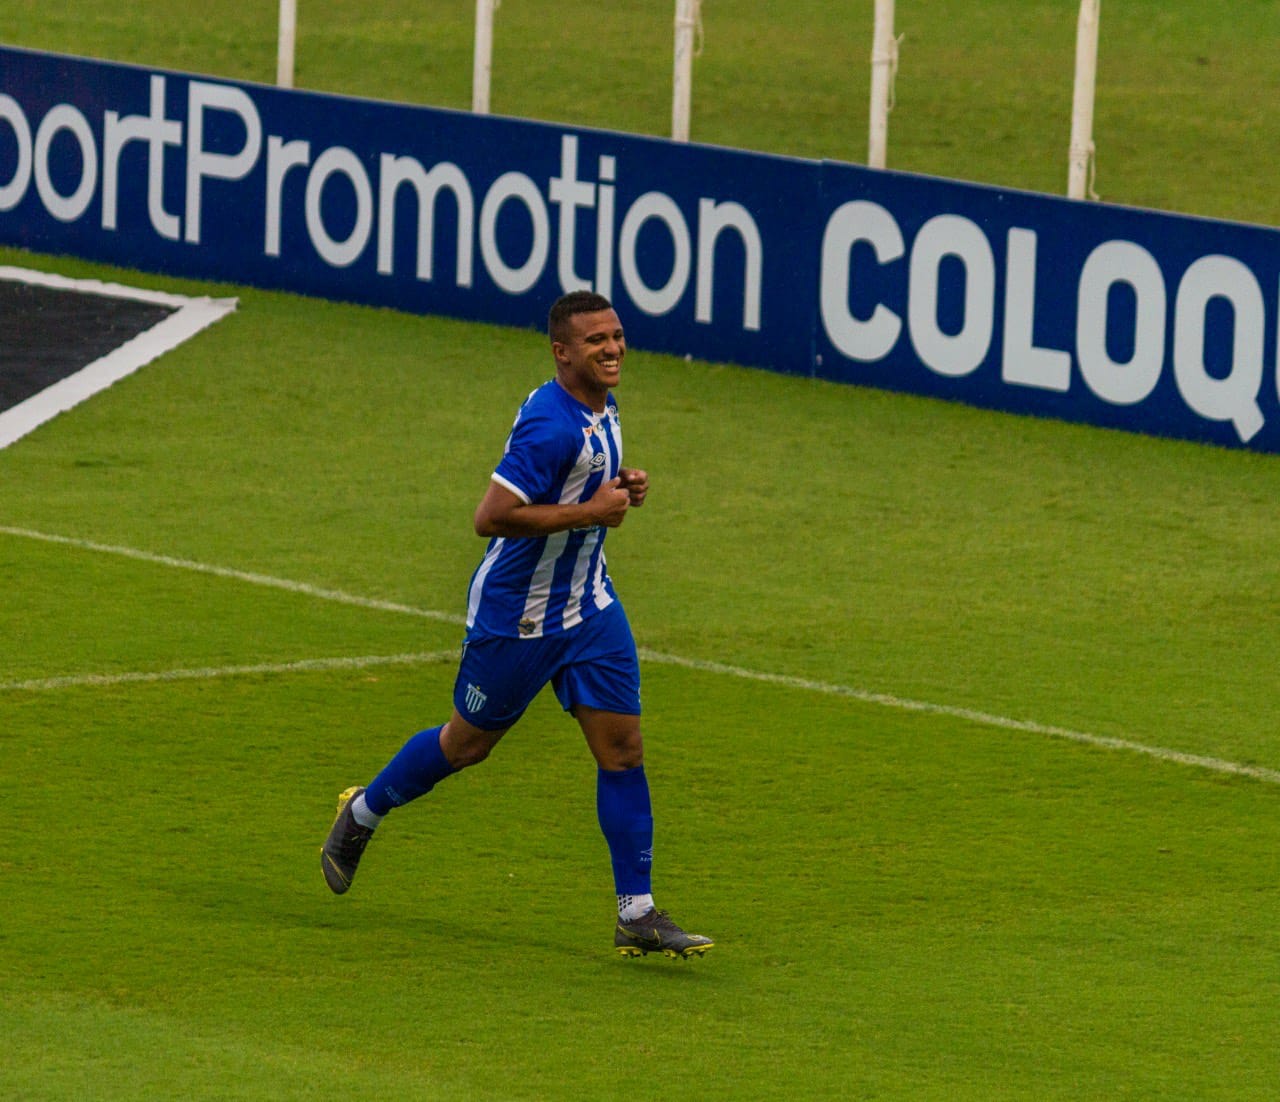 Atacante Rômulo marcou o gol da vitória do Avaí. Foto: Avaí / Divulgação.